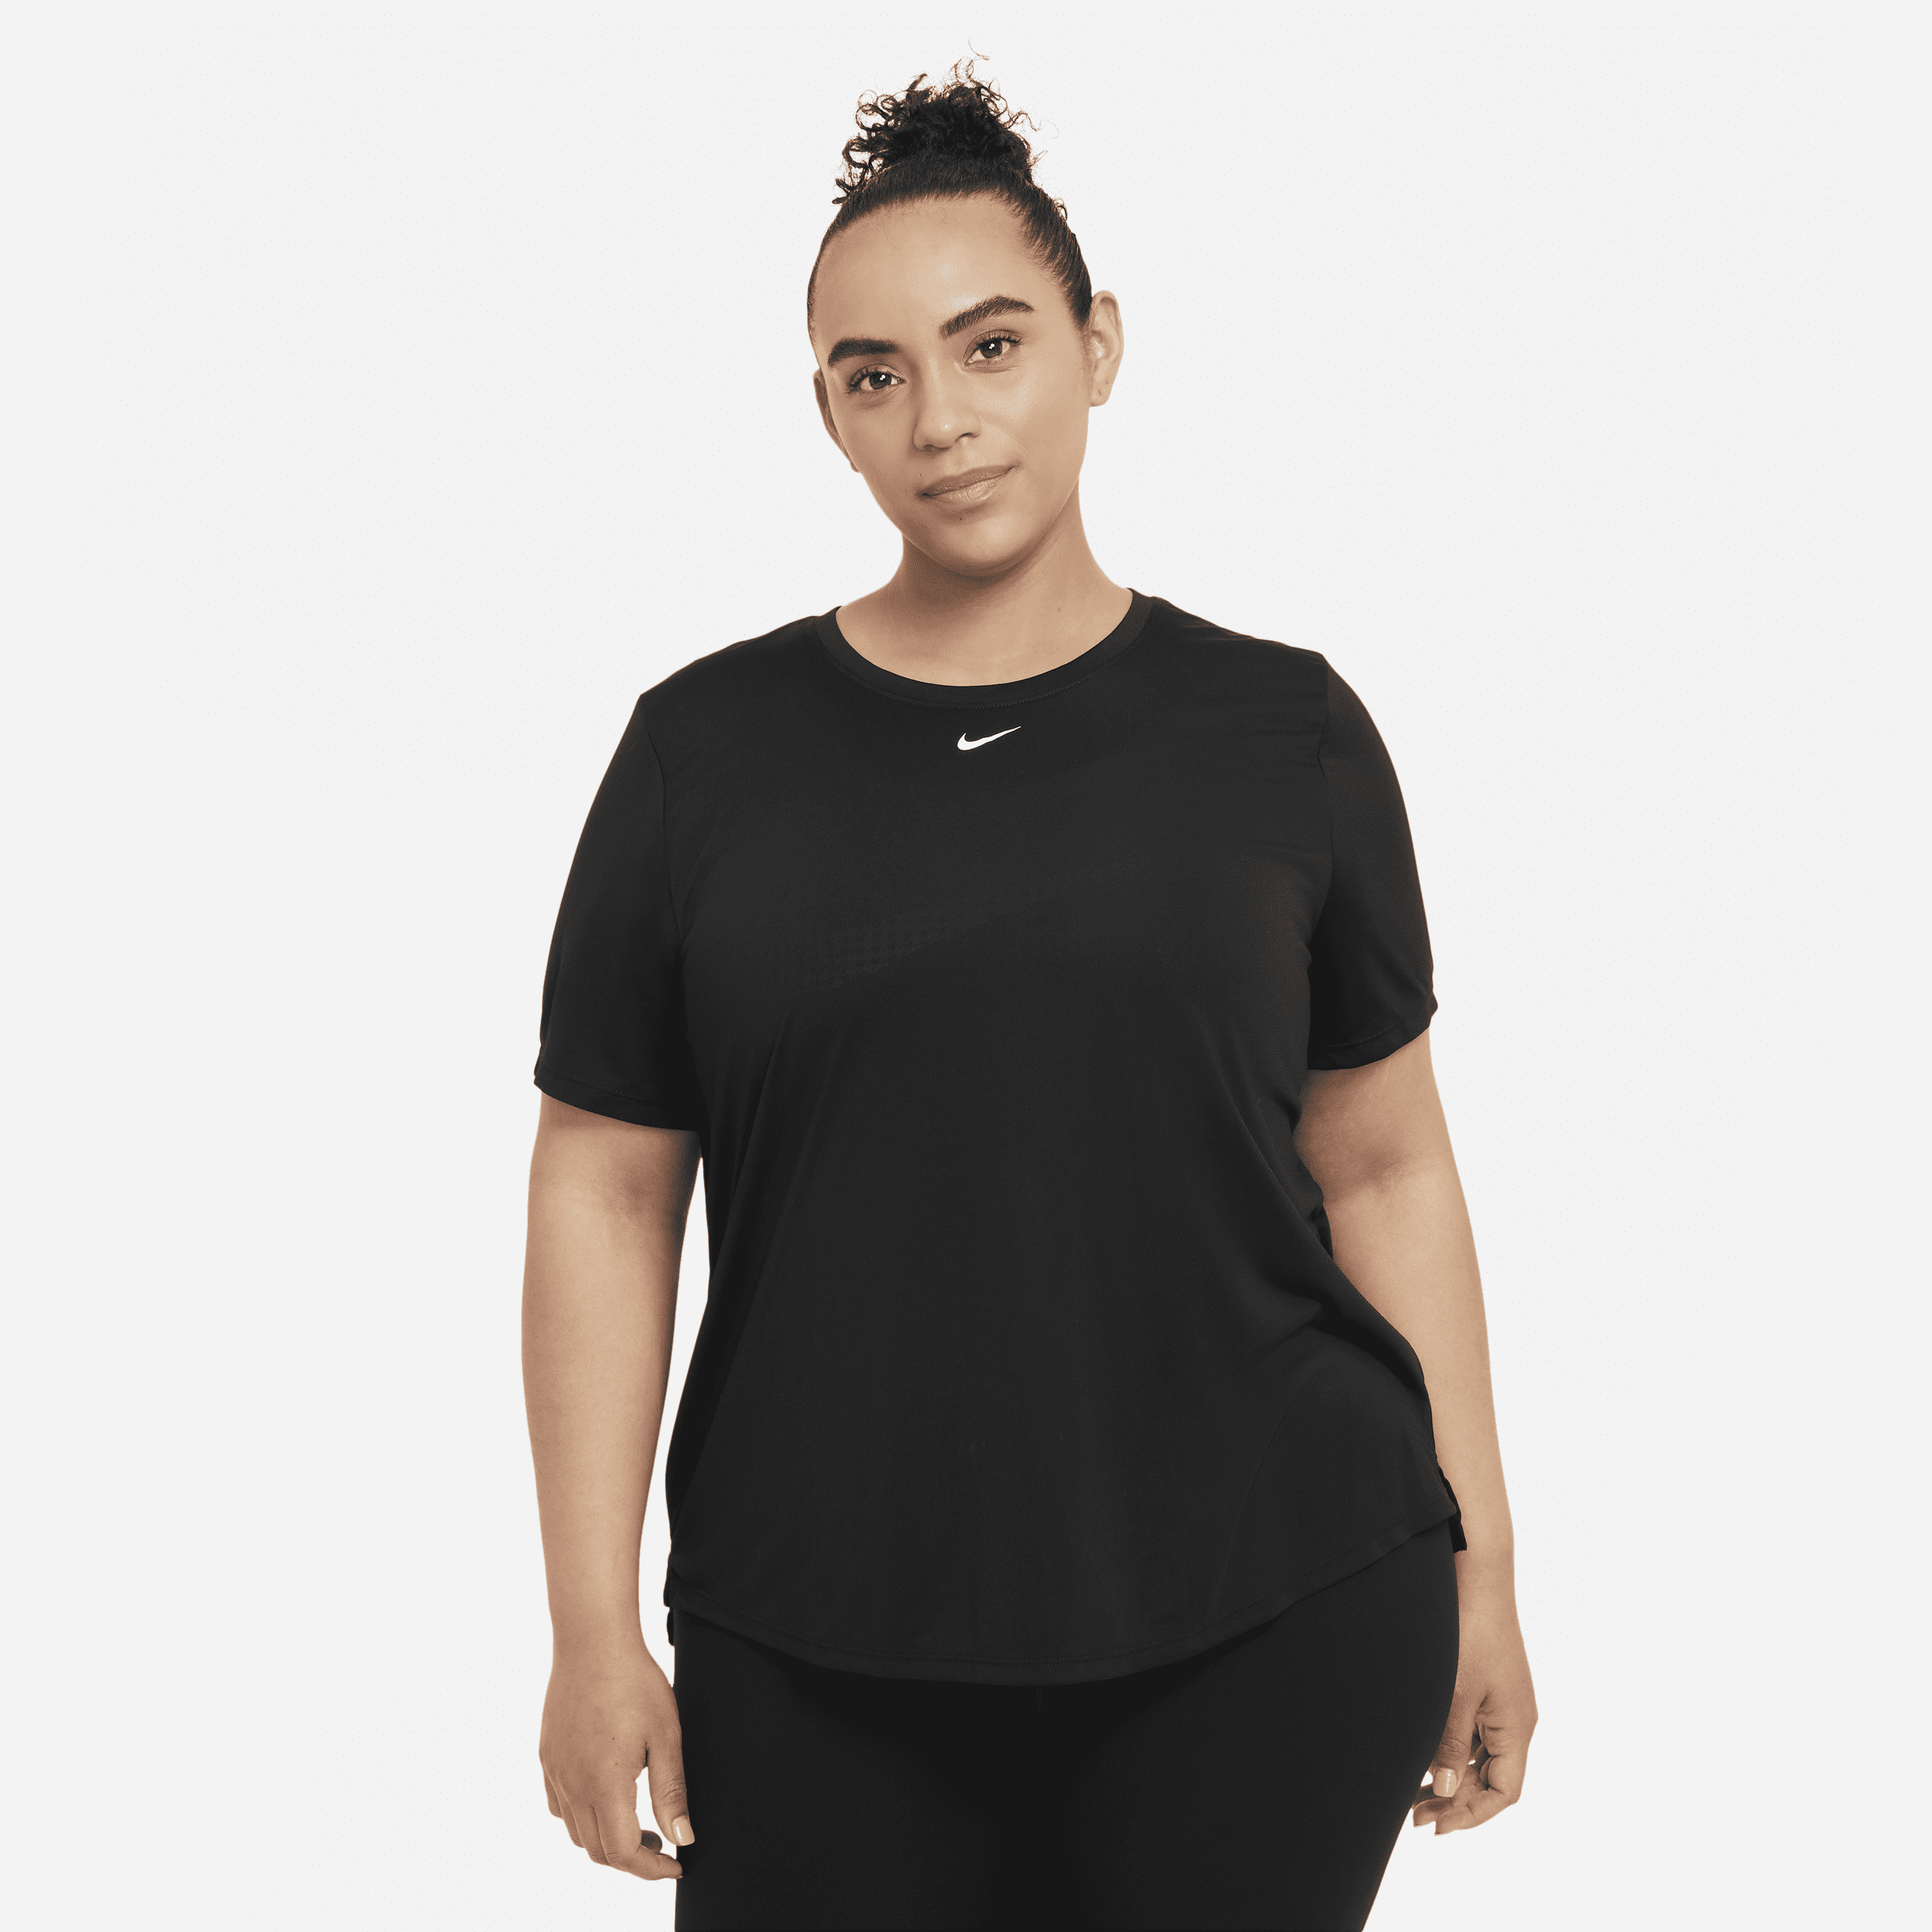 Kortærmet Nike Dri-FIT One-trøje (Plus size) i standardpasform til kvinder - sort